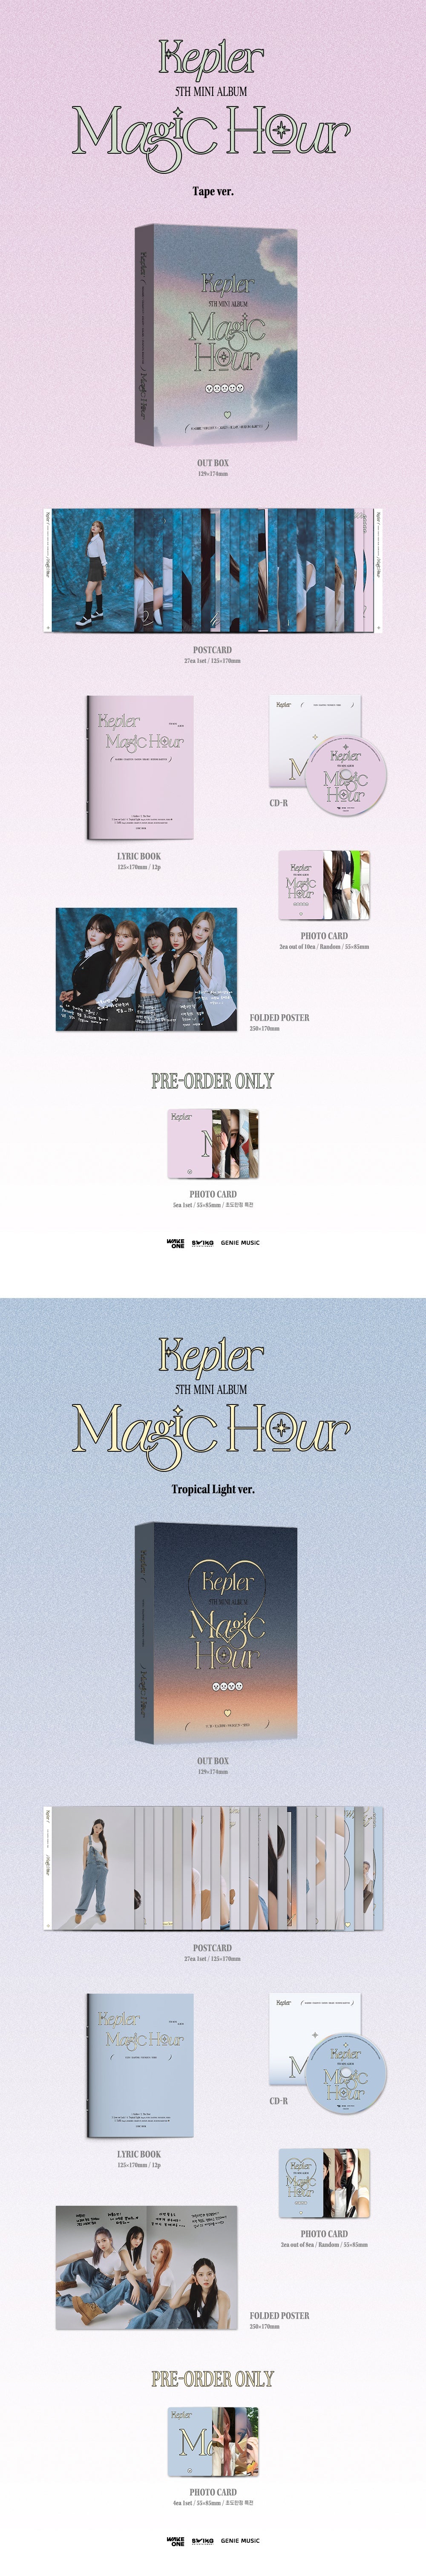 kep1er album online store